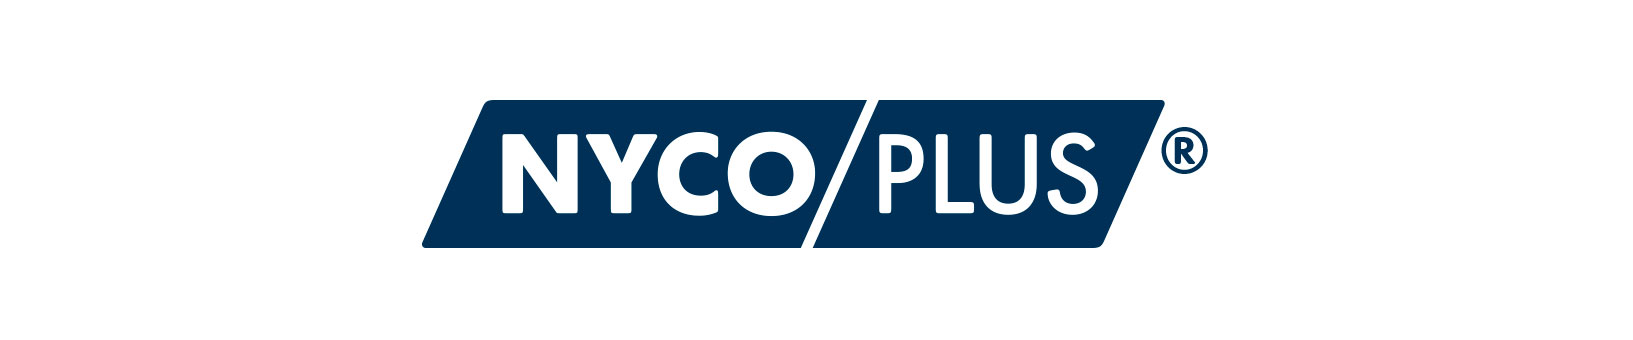 NycoPlus logo